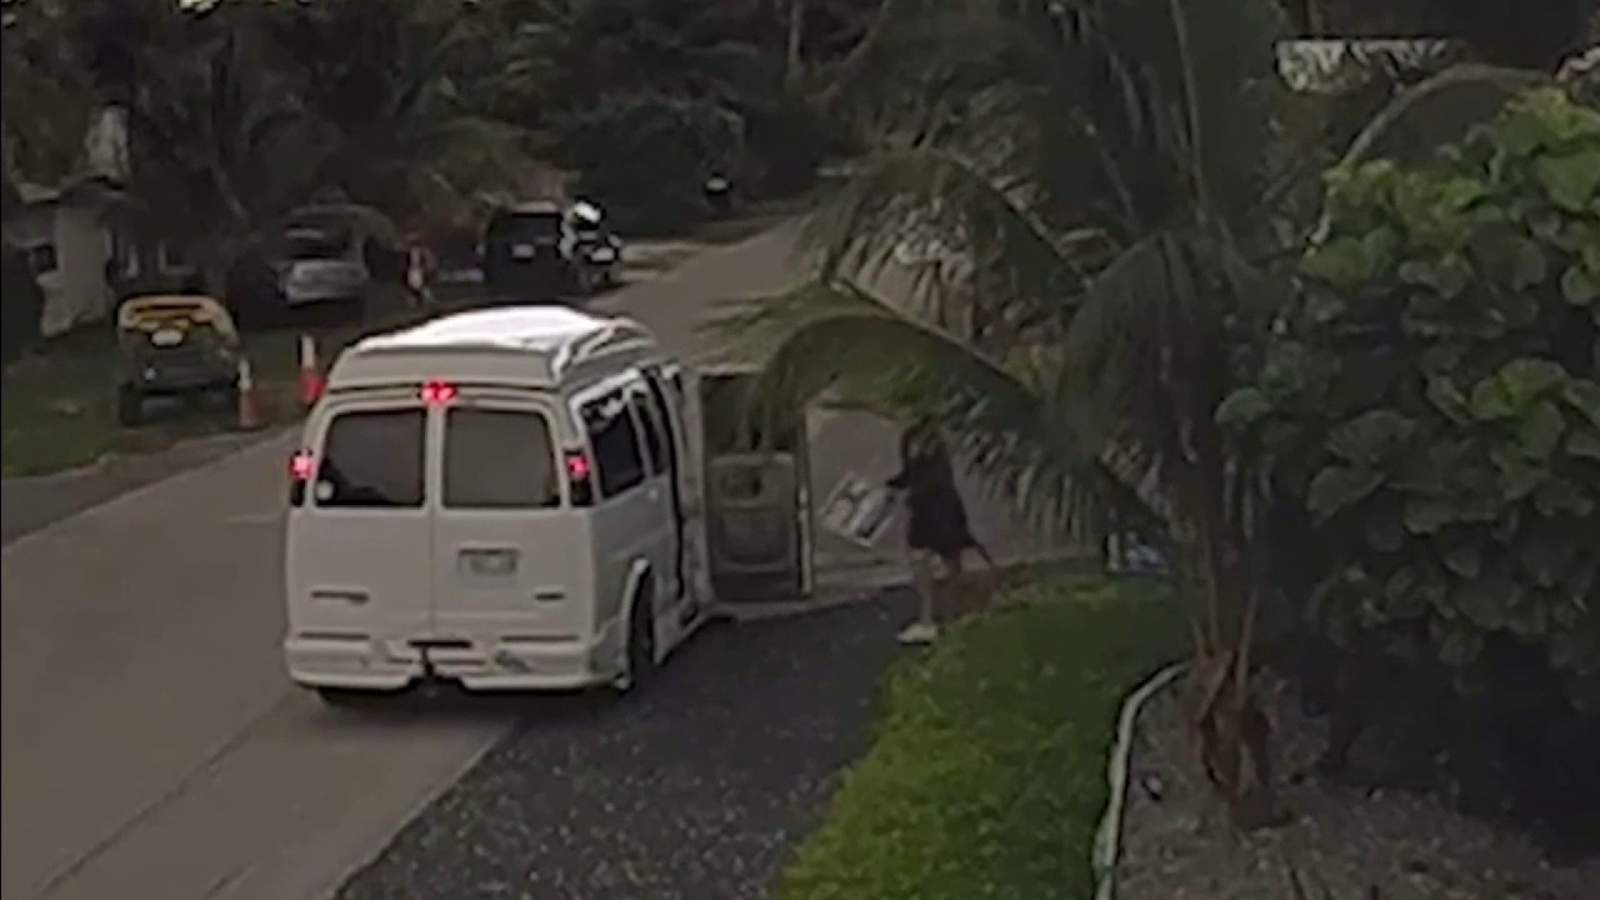 Surveillance footage captures thief snatching Joe Biden yard sign in broad daylight